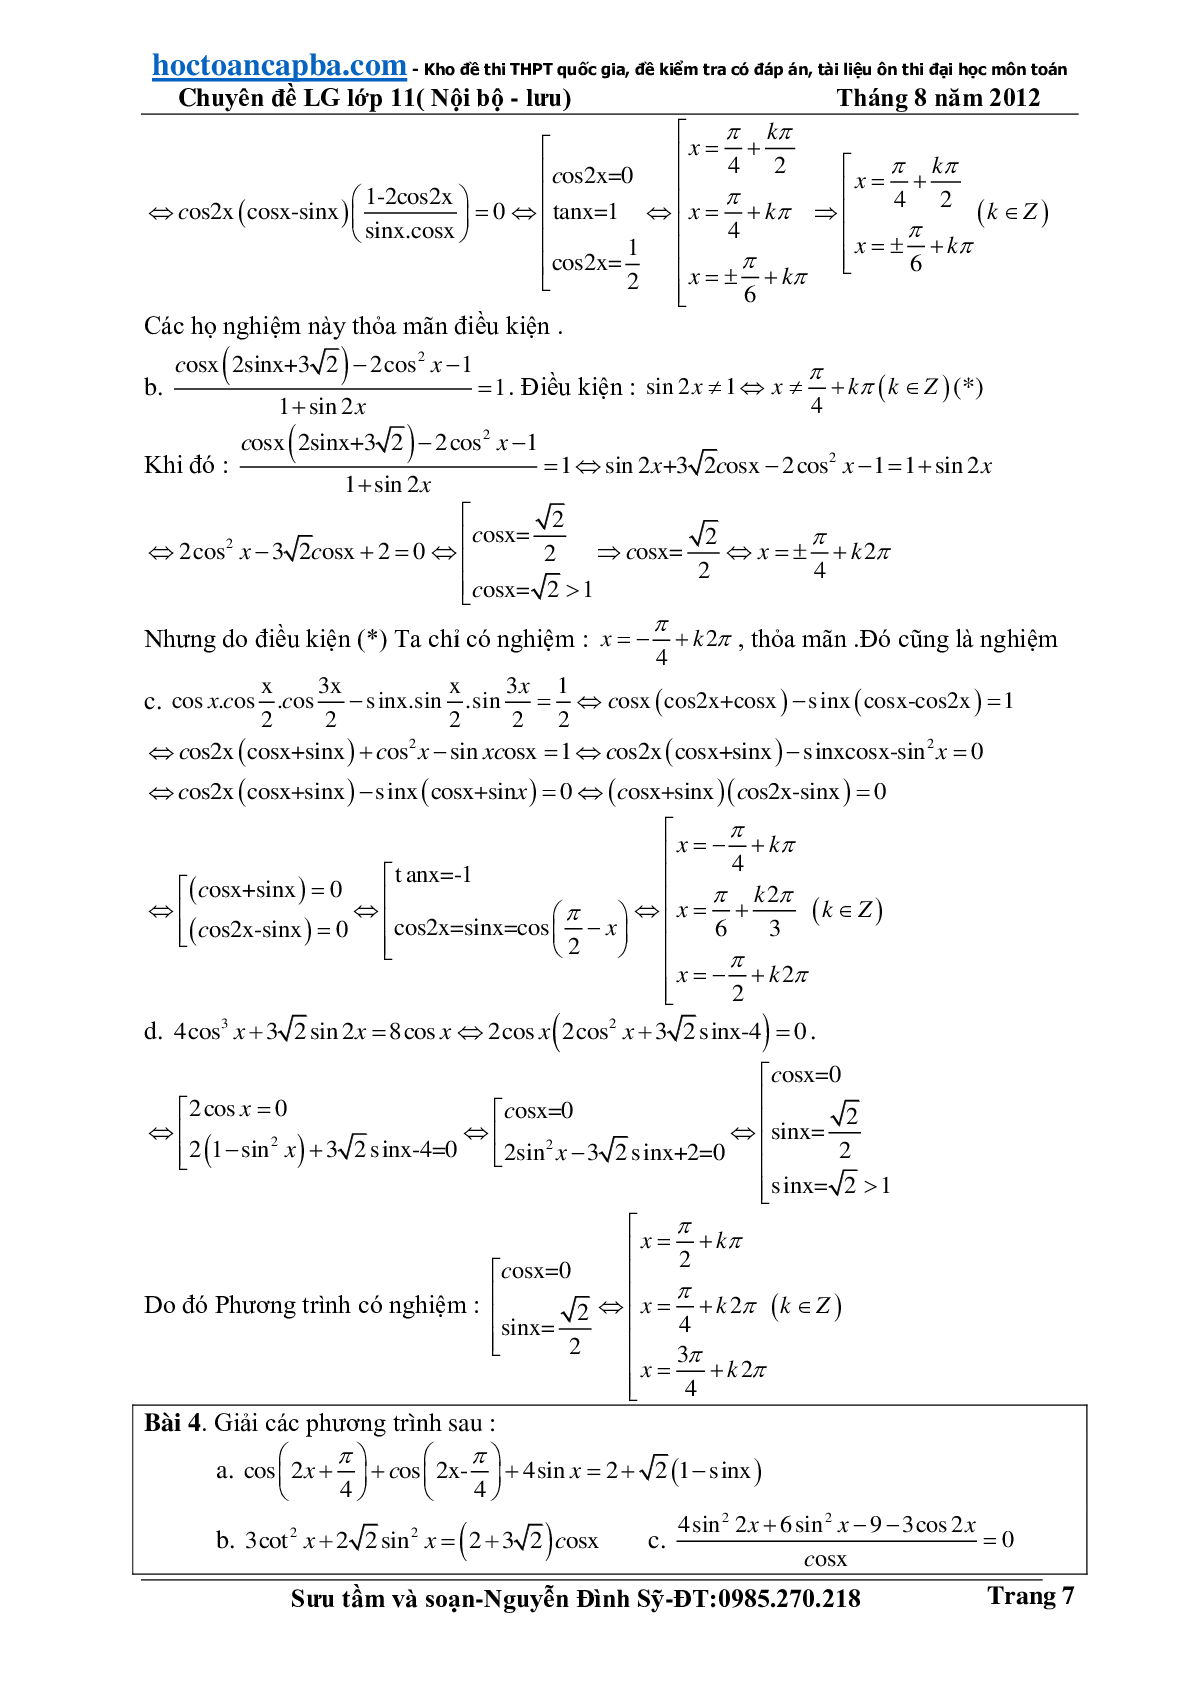 Hướng dẫn giải phương trình lượng giác cơ bản và đơn giản (trang 7)